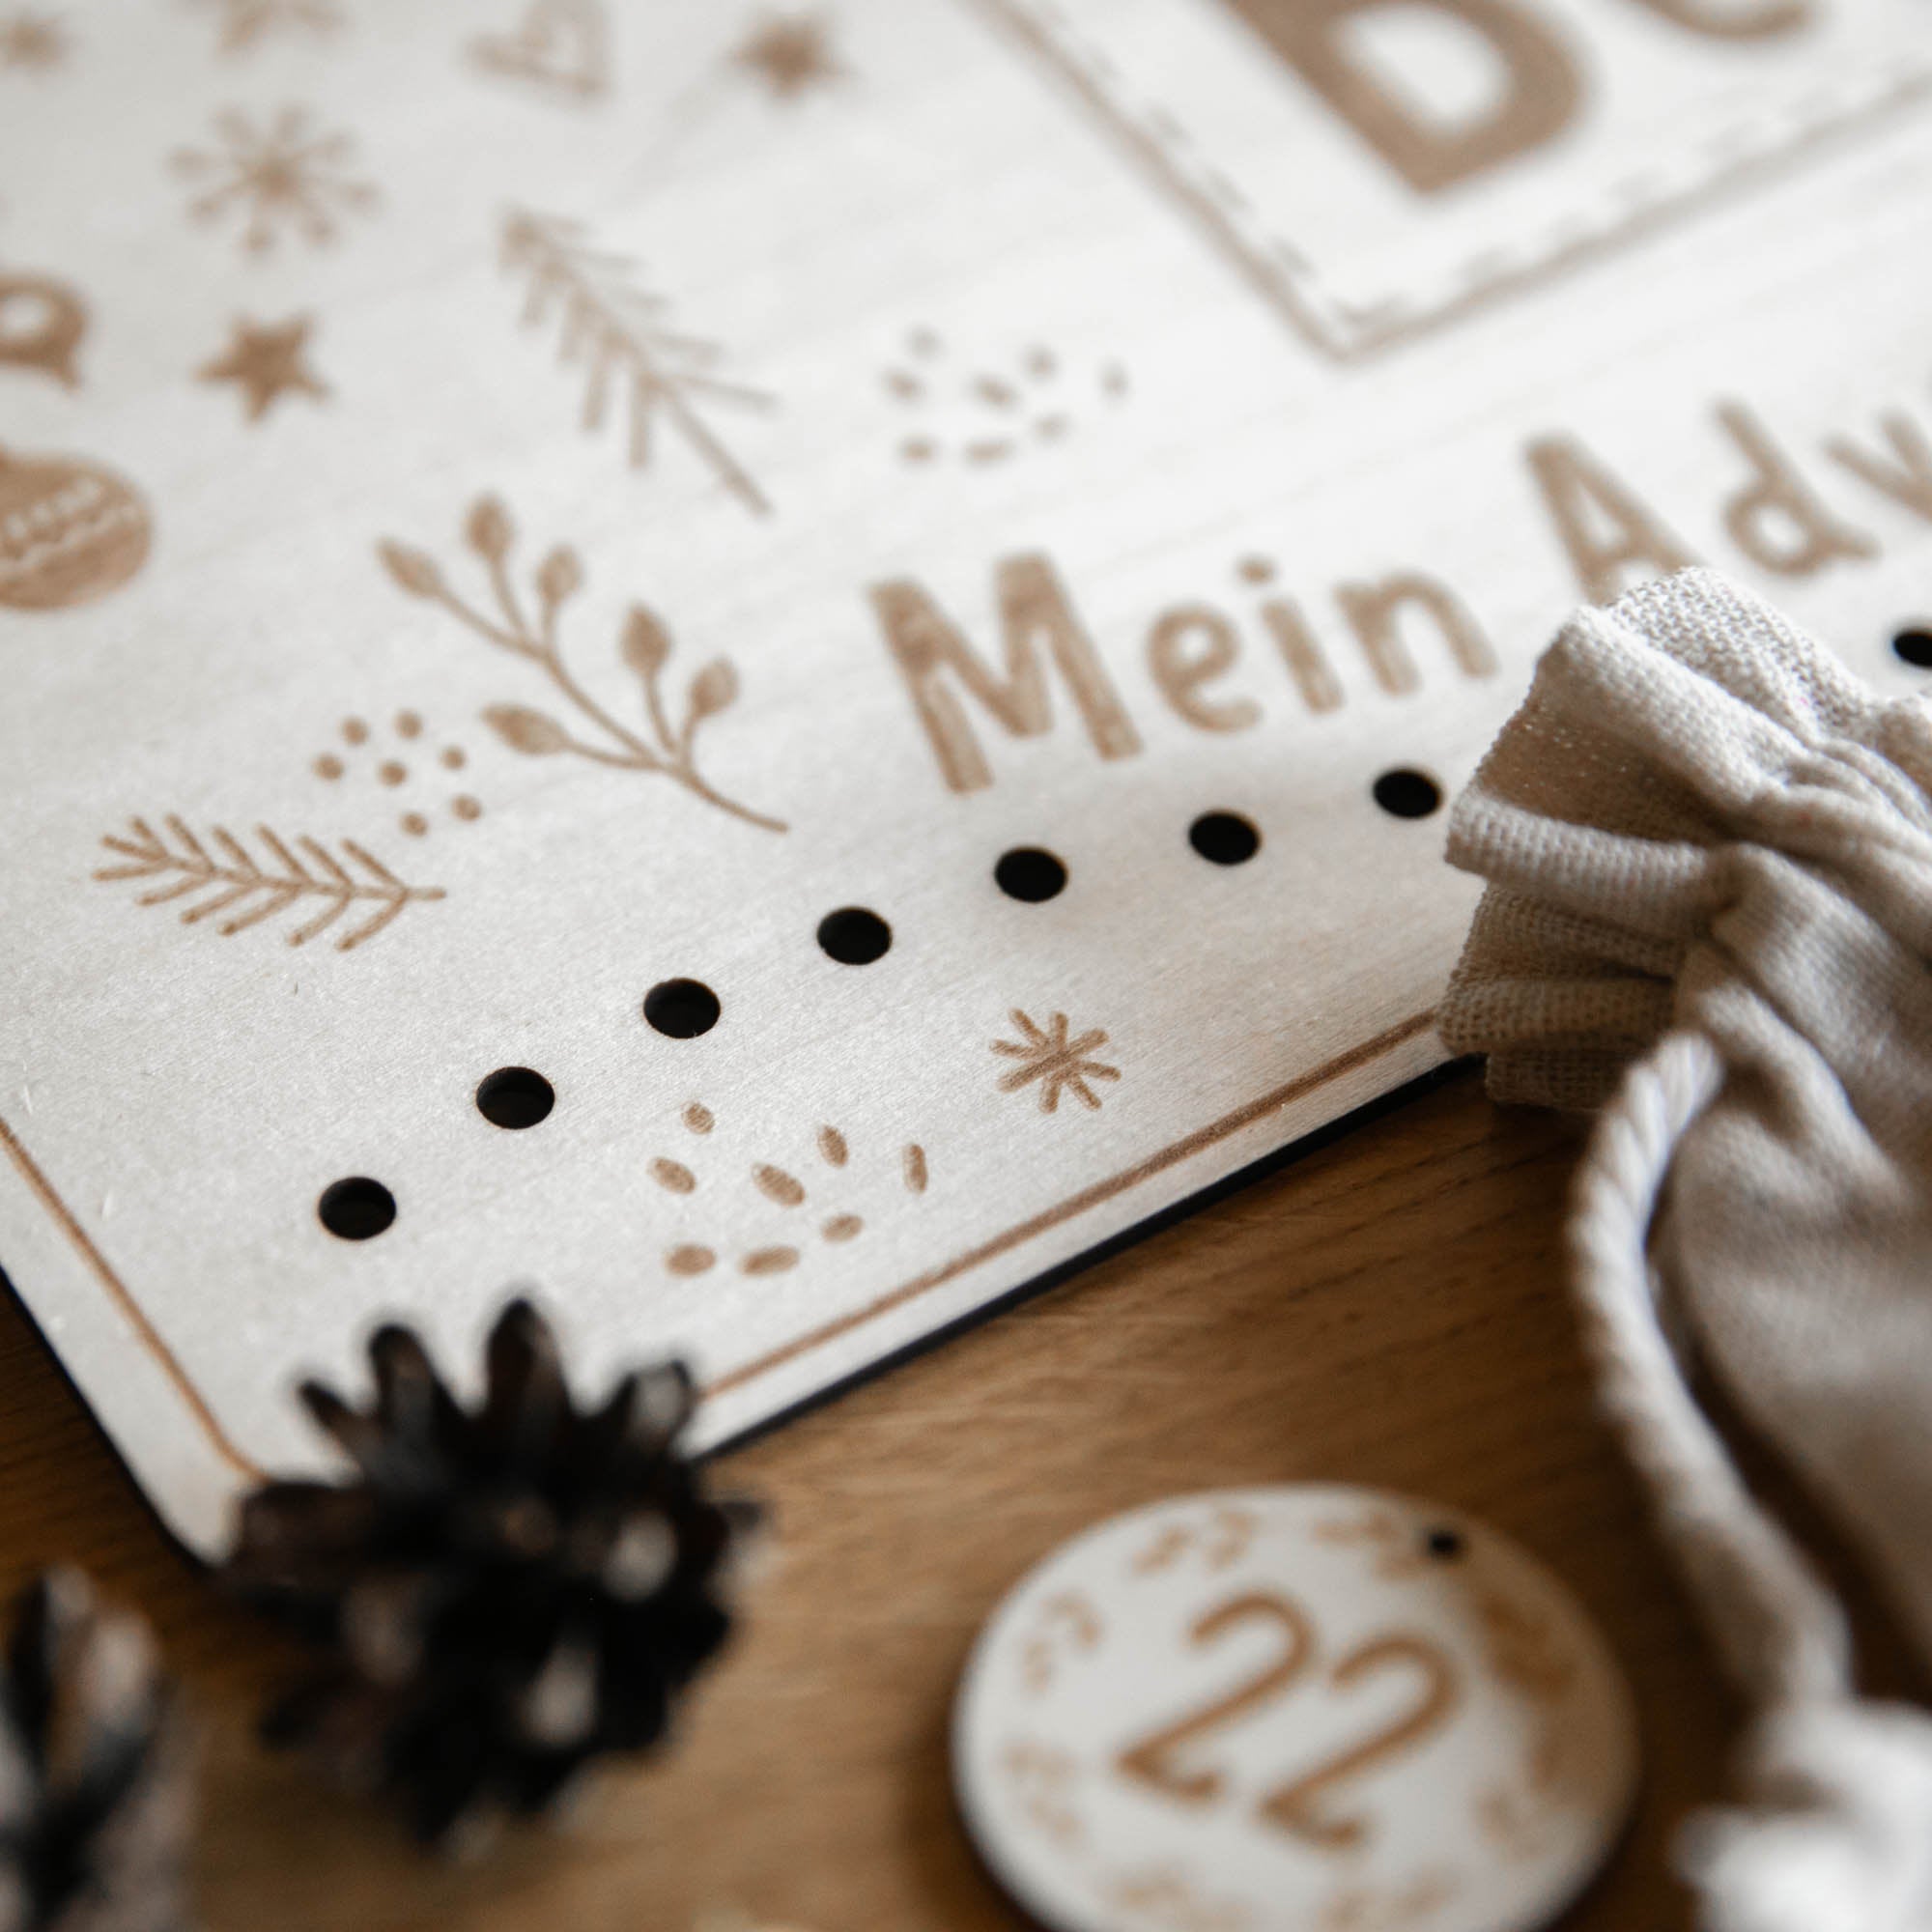 Personalisierter Adventskalender zum Befüllen aus Holz mit Säckchen und Holzzahlen / Adventskalender aus Holz mit Namen graviert